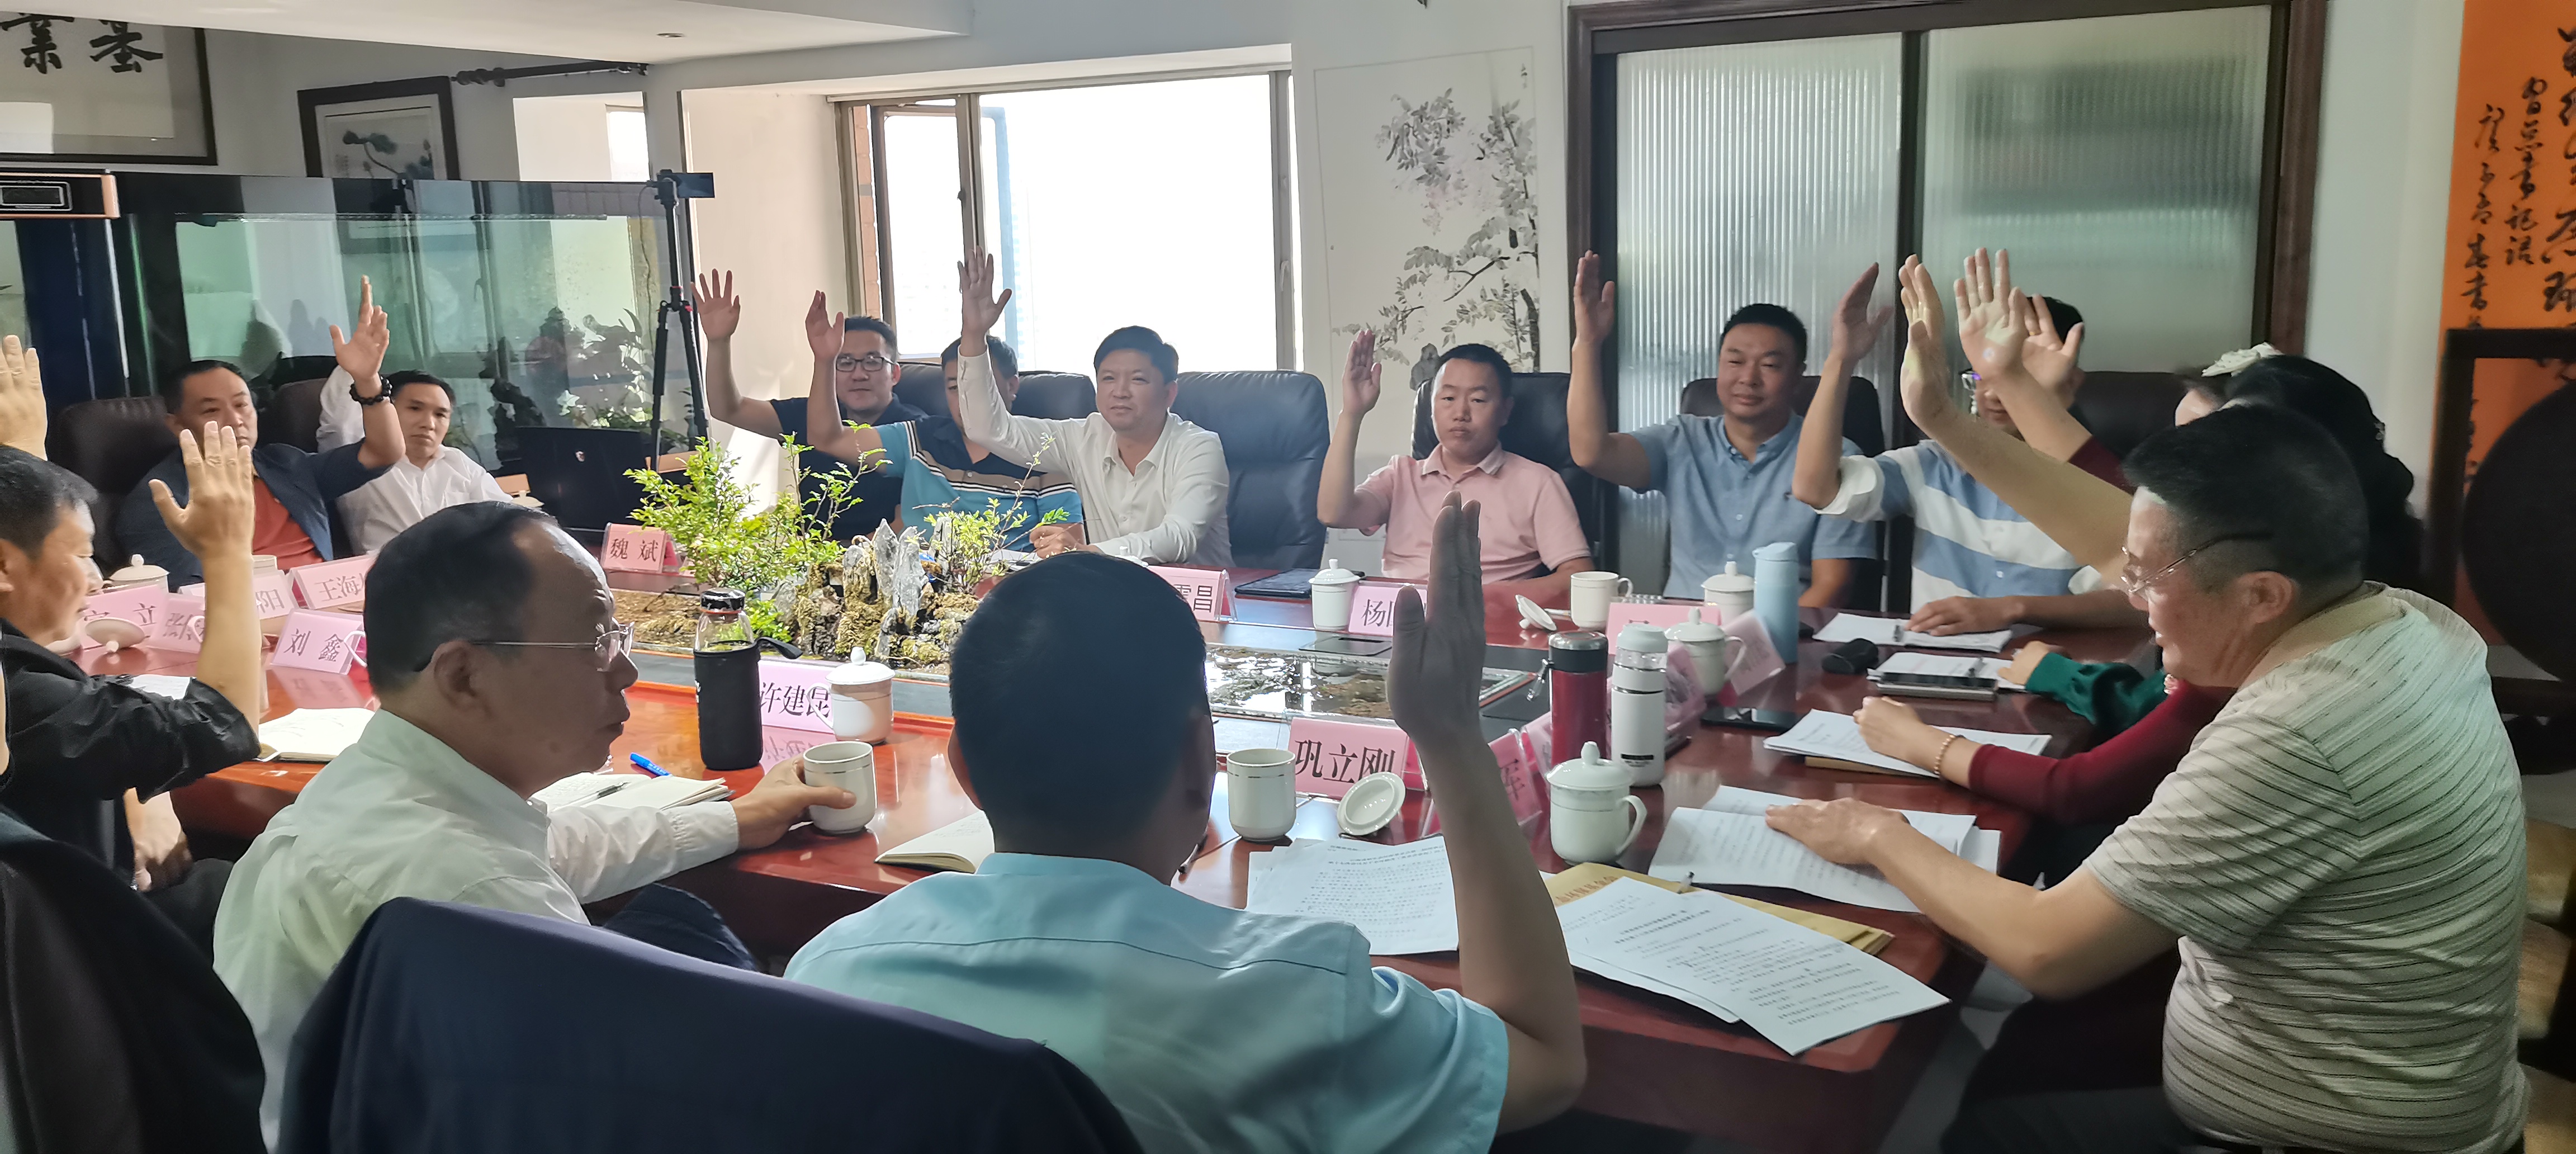 云南高原生态环保基金会换届选举大会圆满成功